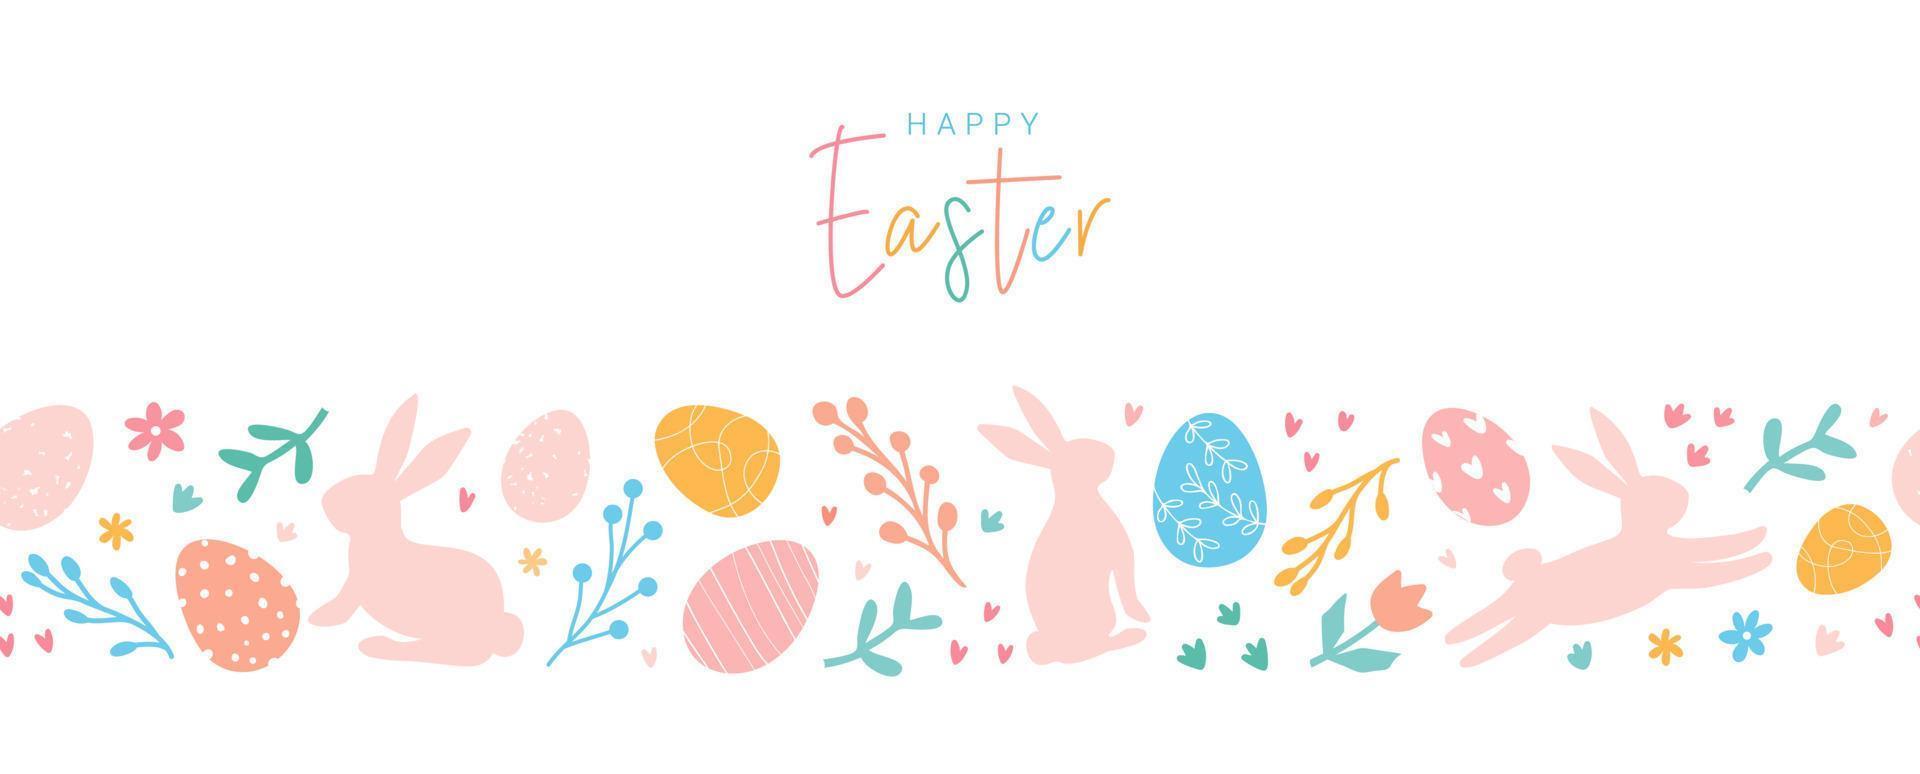 Lycklig påsk. härlig påsk horisontell baner med mönster förbi ägg, doodles, kaniner, blommor. påsk festlig gräns. lämplig för textilier, hälsning kort, tapet, omslag papper. vektor